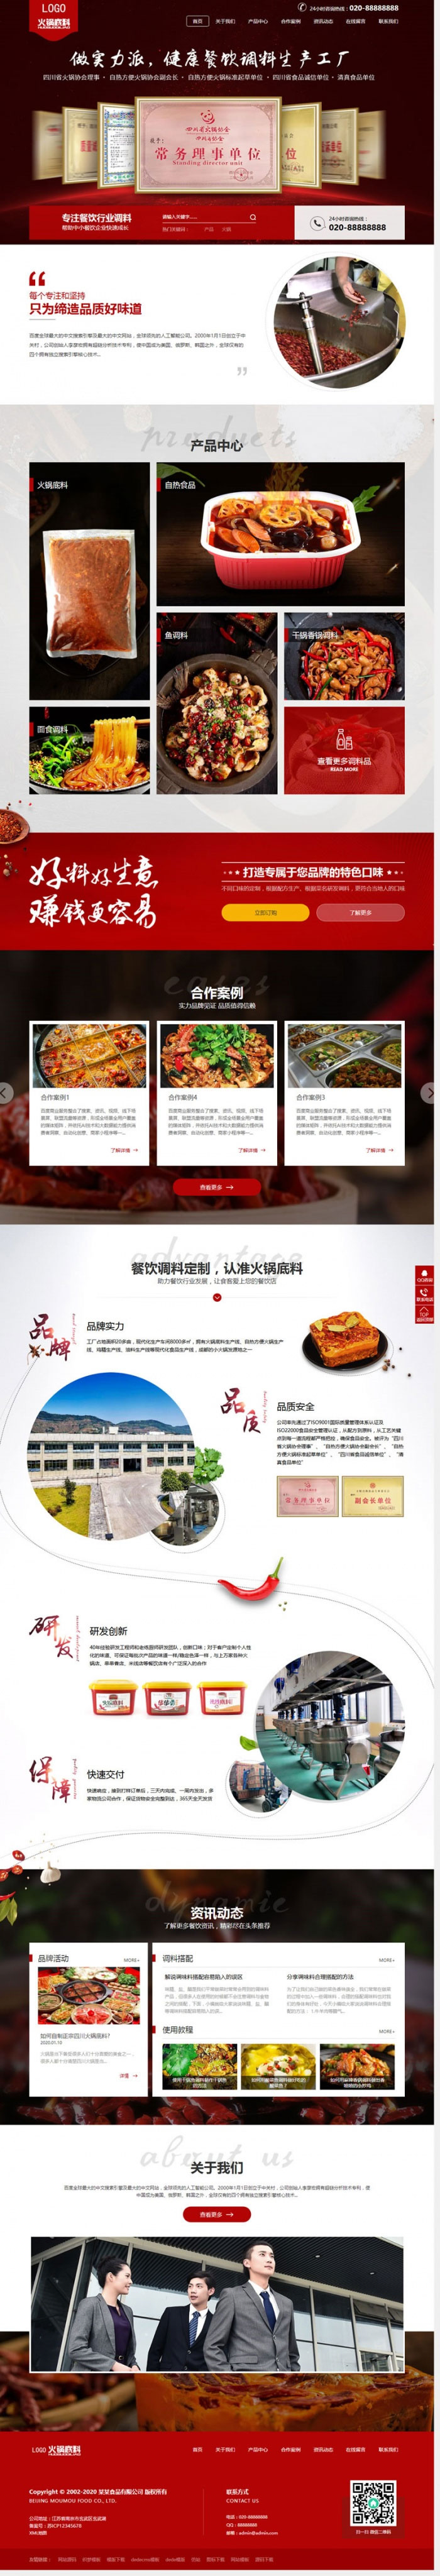 织梦dedecms高端营销型火锅底料餐饮调料食品公司网站模板(带手机移动端)